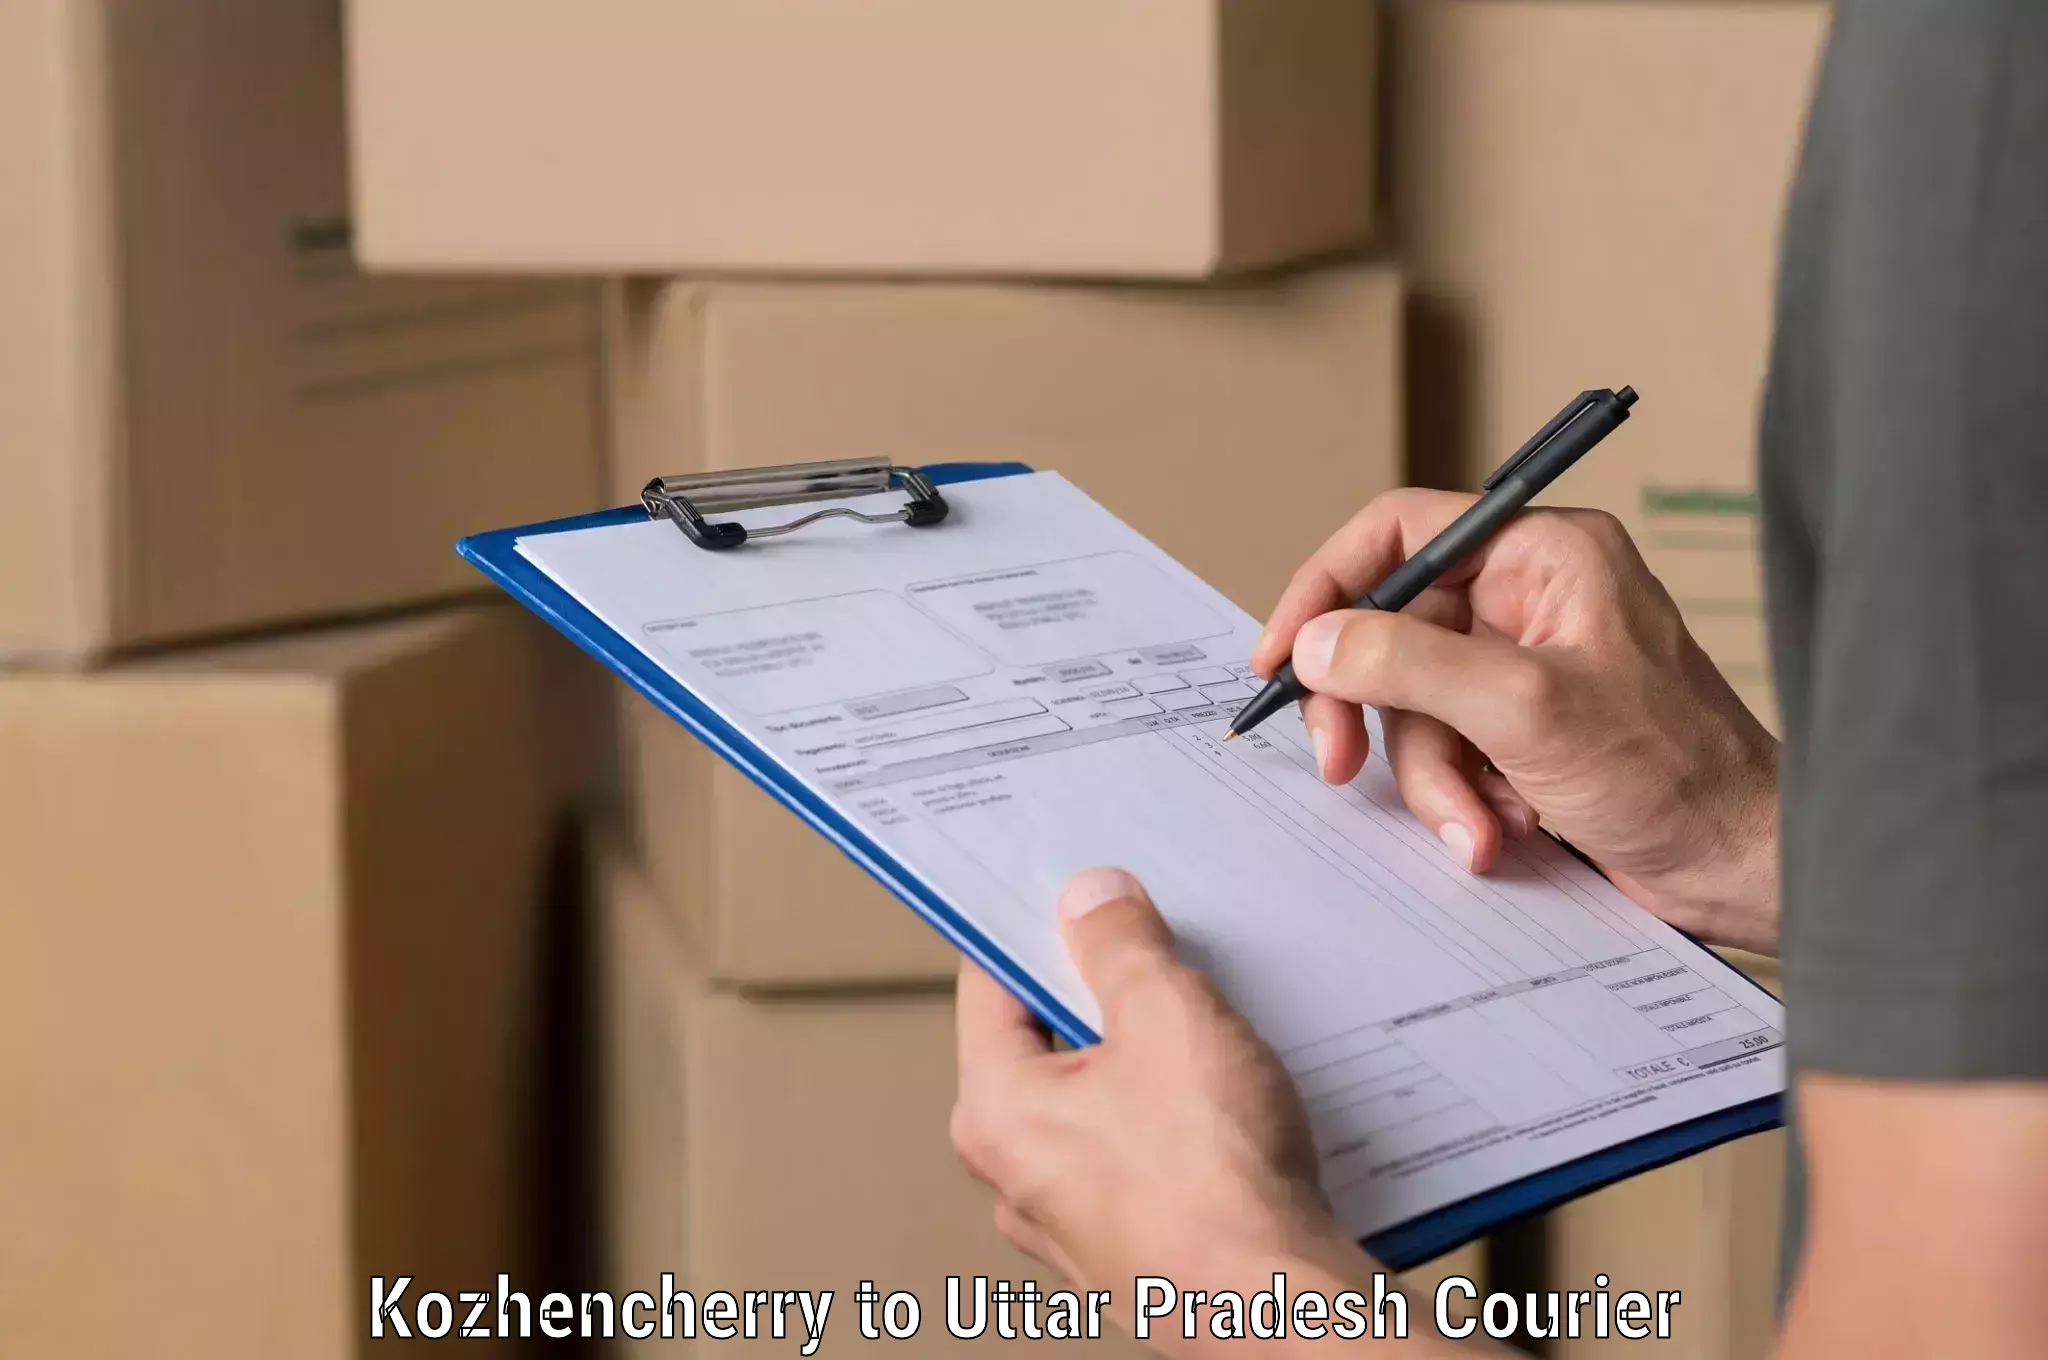 Large-scale shipping solutions Kozhencherry to Uttar Pradesh